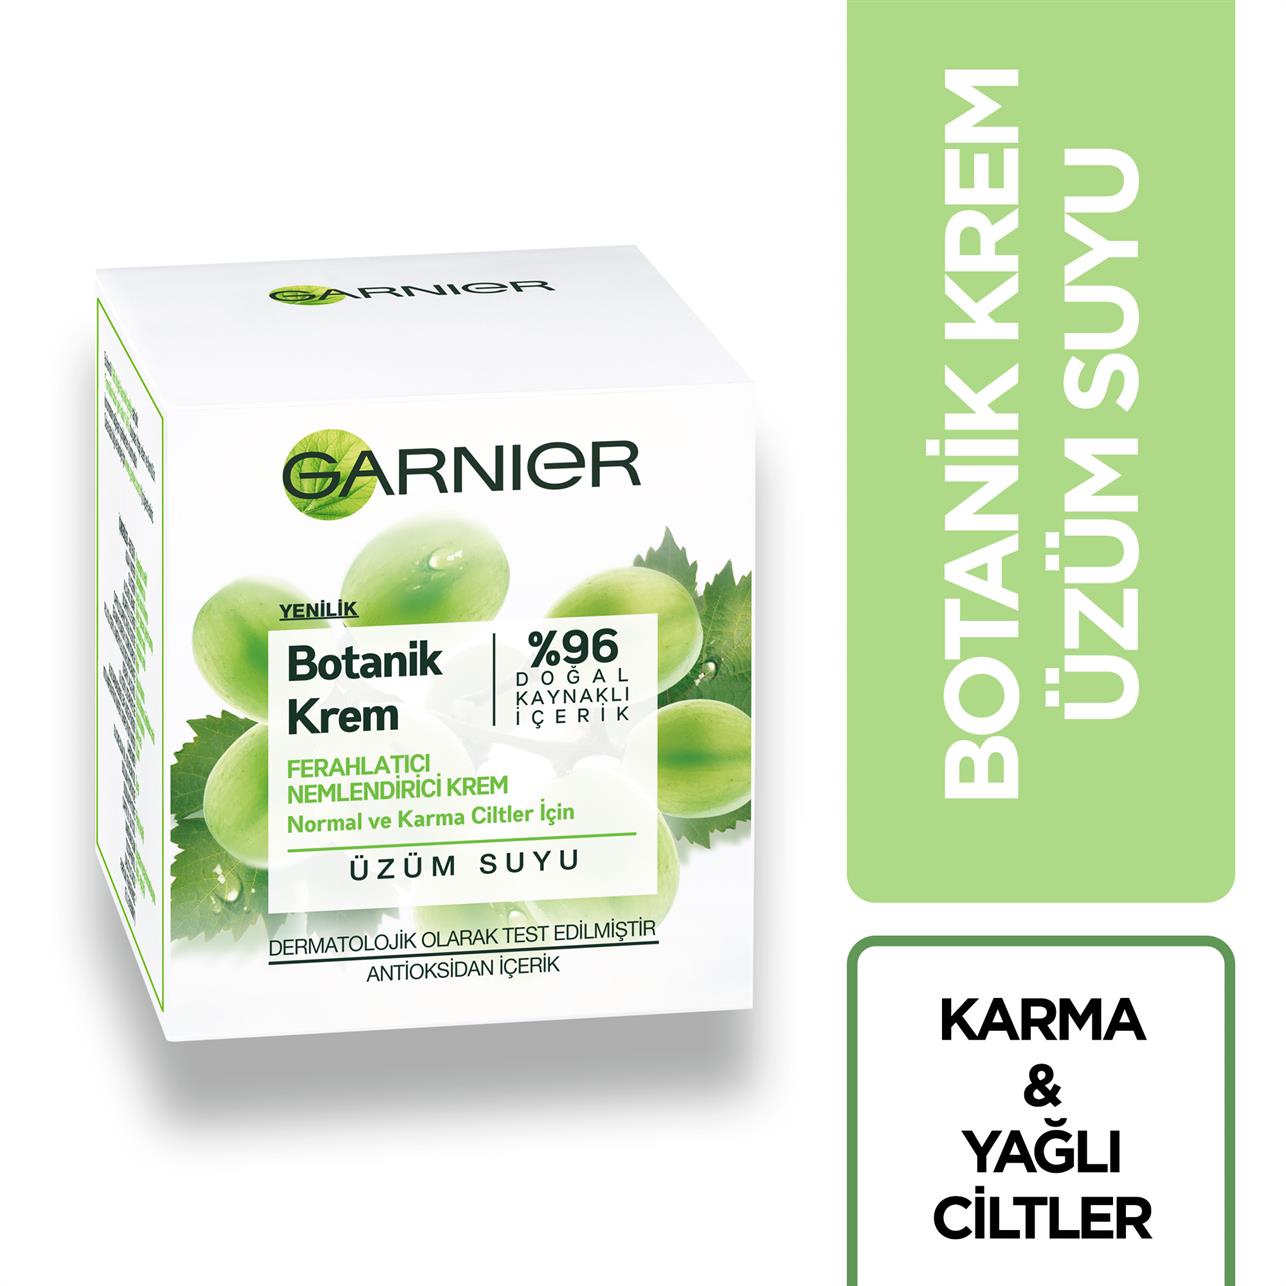 Garnier Botanik Krem Normal Ve Karma Ciltler İçin Ferahlatıcı Nemlendirici Krem  Üzüm Suyu 50 ml - Platin